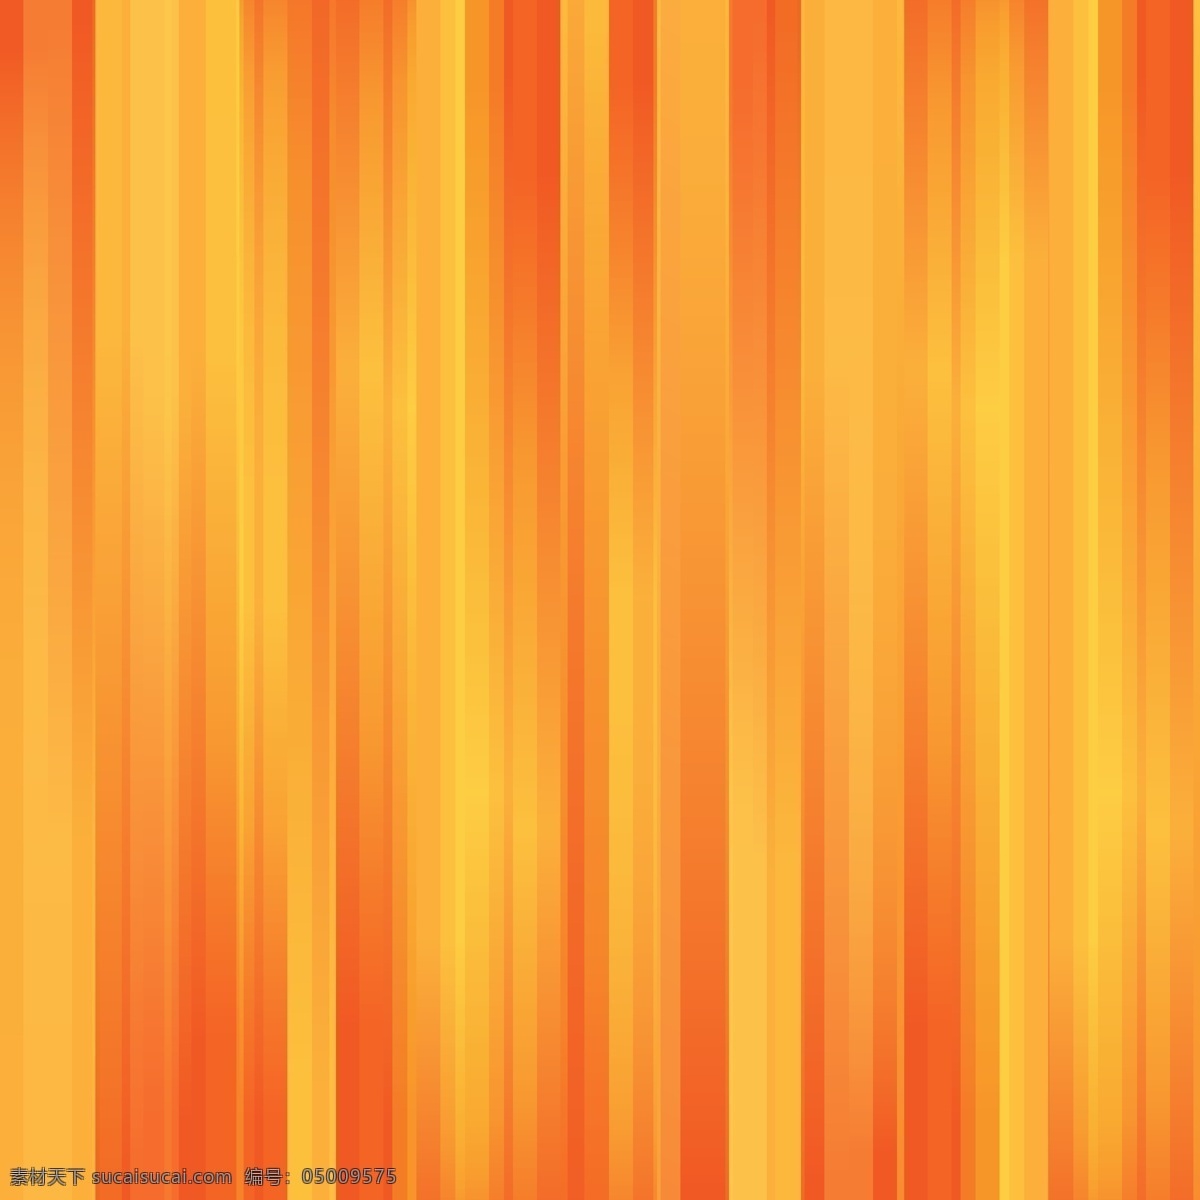 黄色 橙色 条纹 背景 摘要 抽象 几何 行 壁纸 线条 多边形